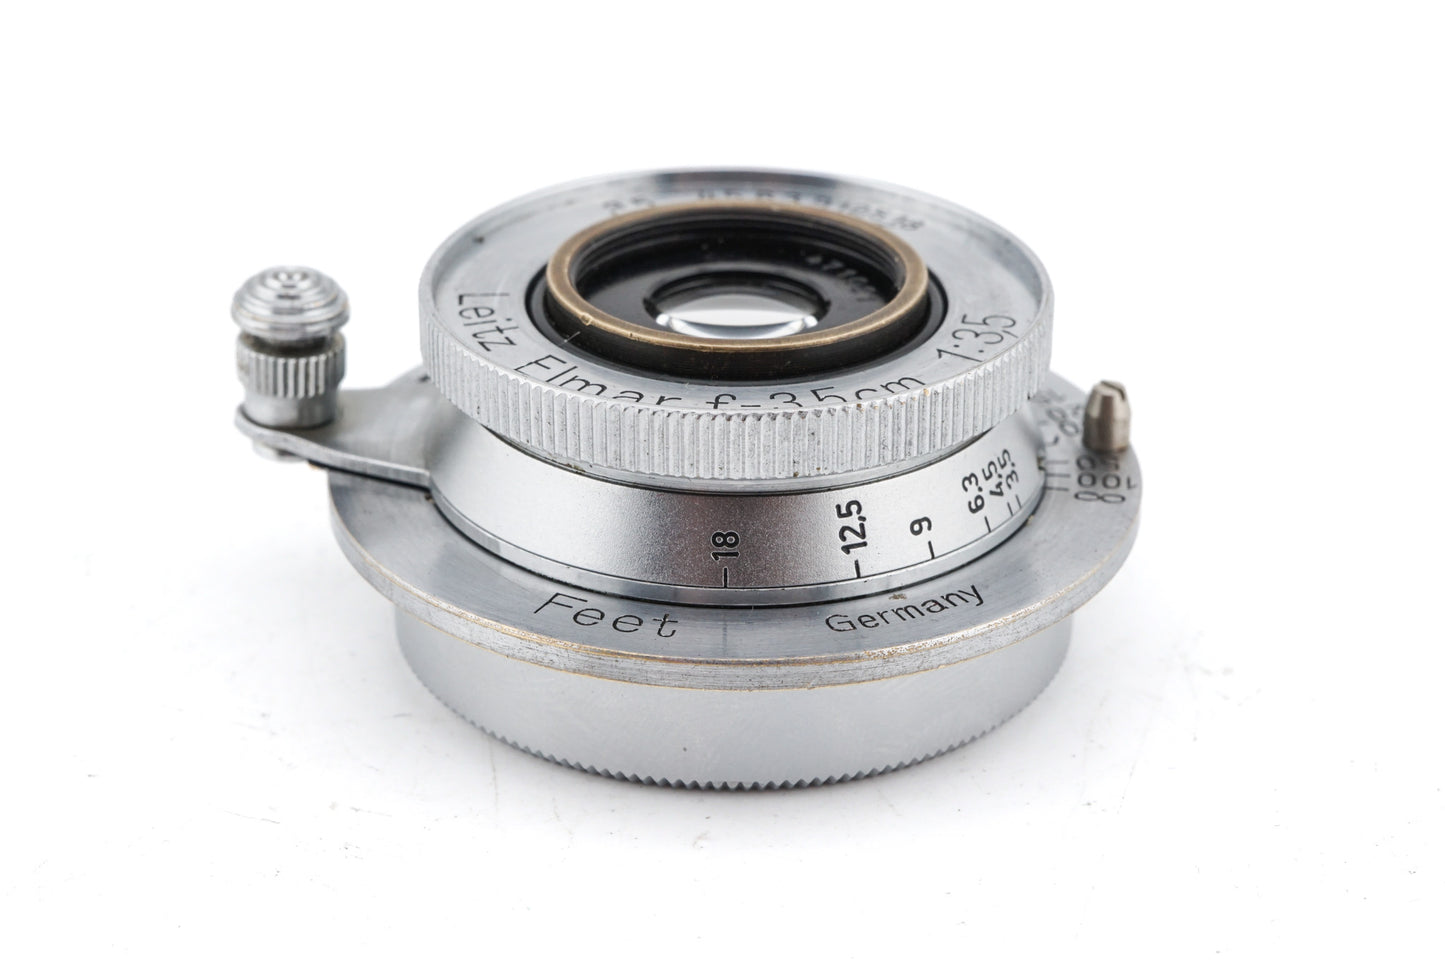 Leica 3.5cm f3.5 Elmar (EKURZ)